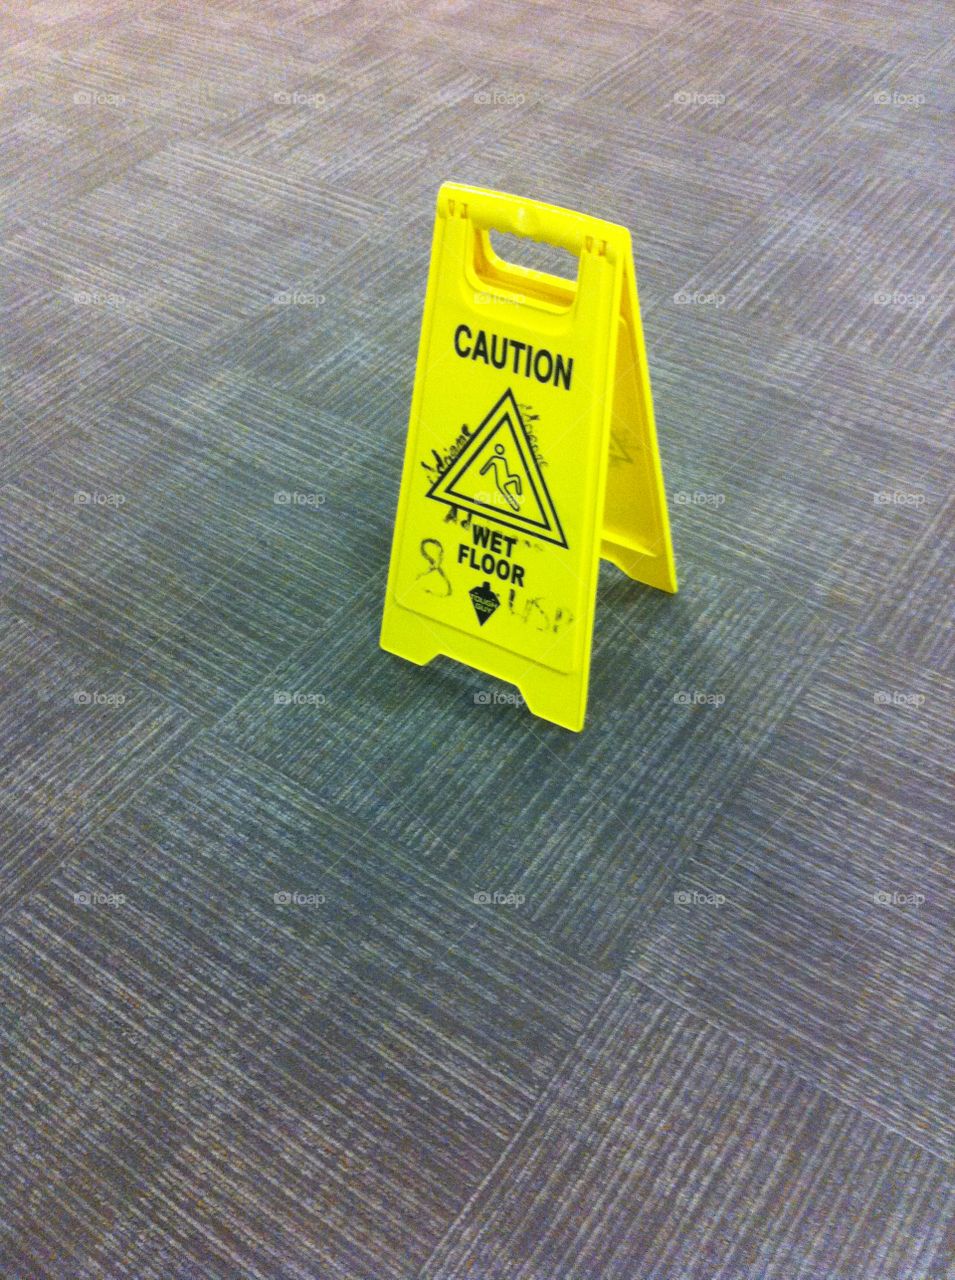 Wet floor sign on carpet